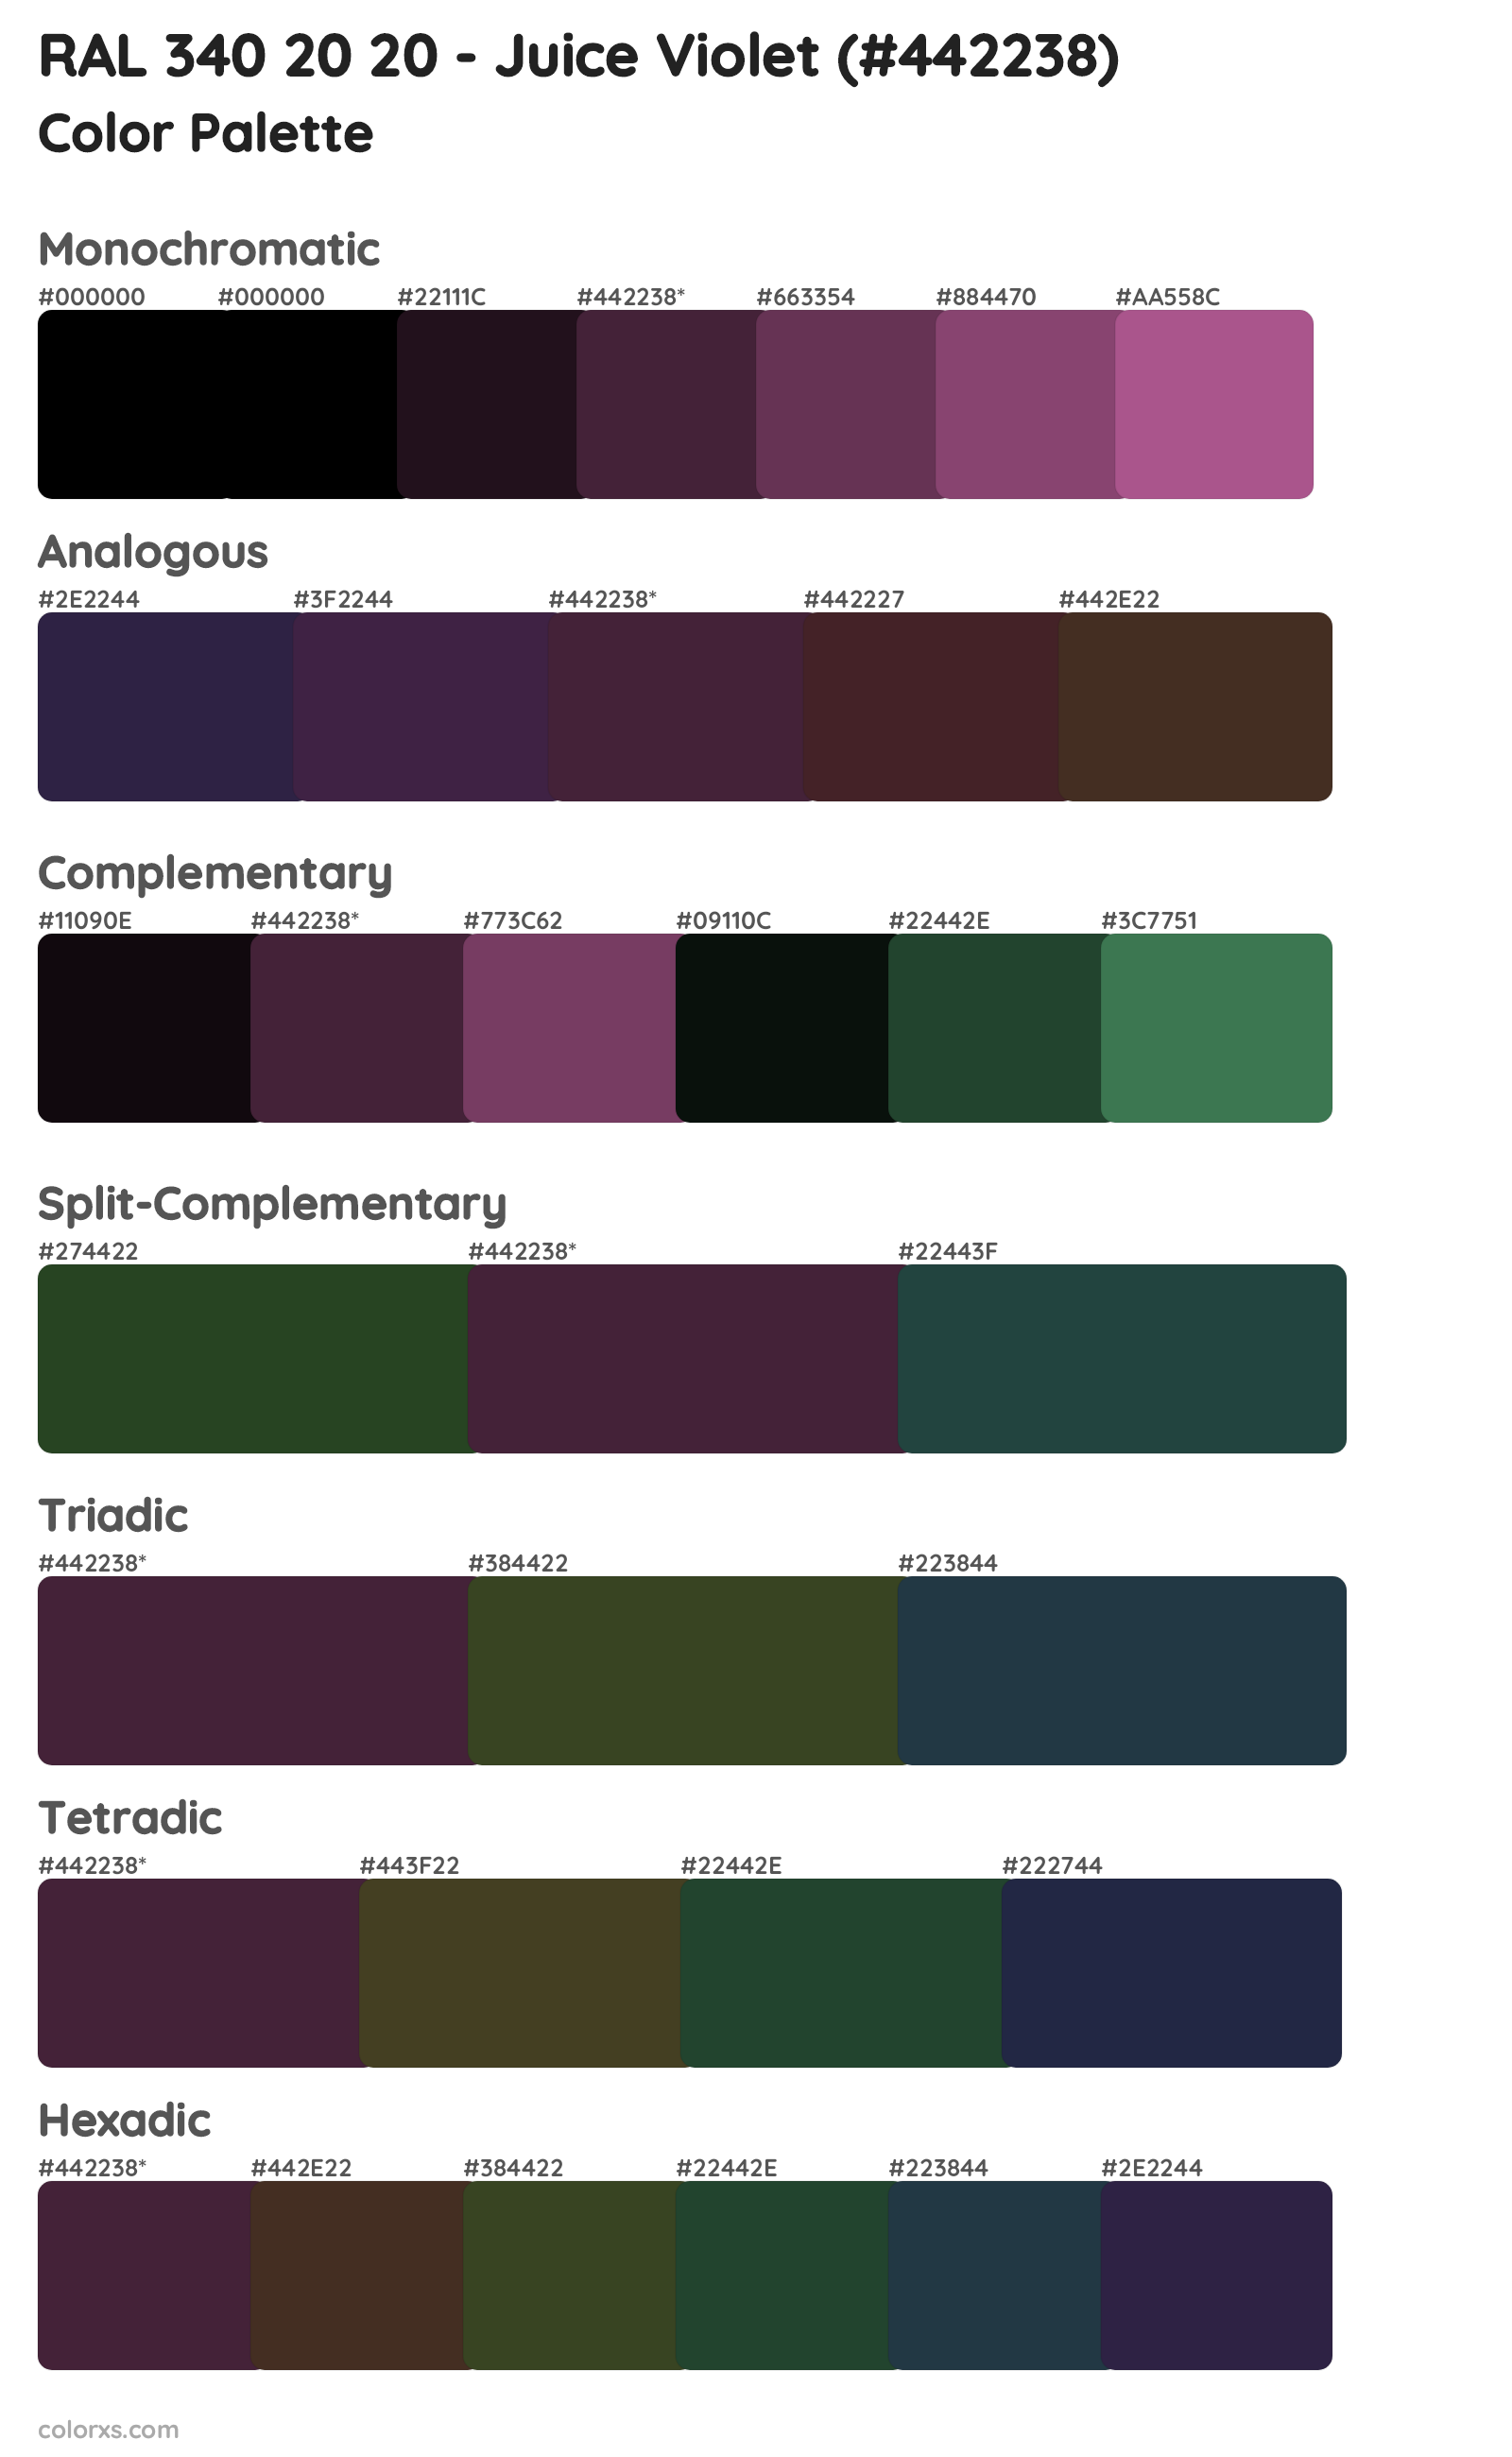 RAL 340 20 20 - Juice Violet Color Scheme Palettes